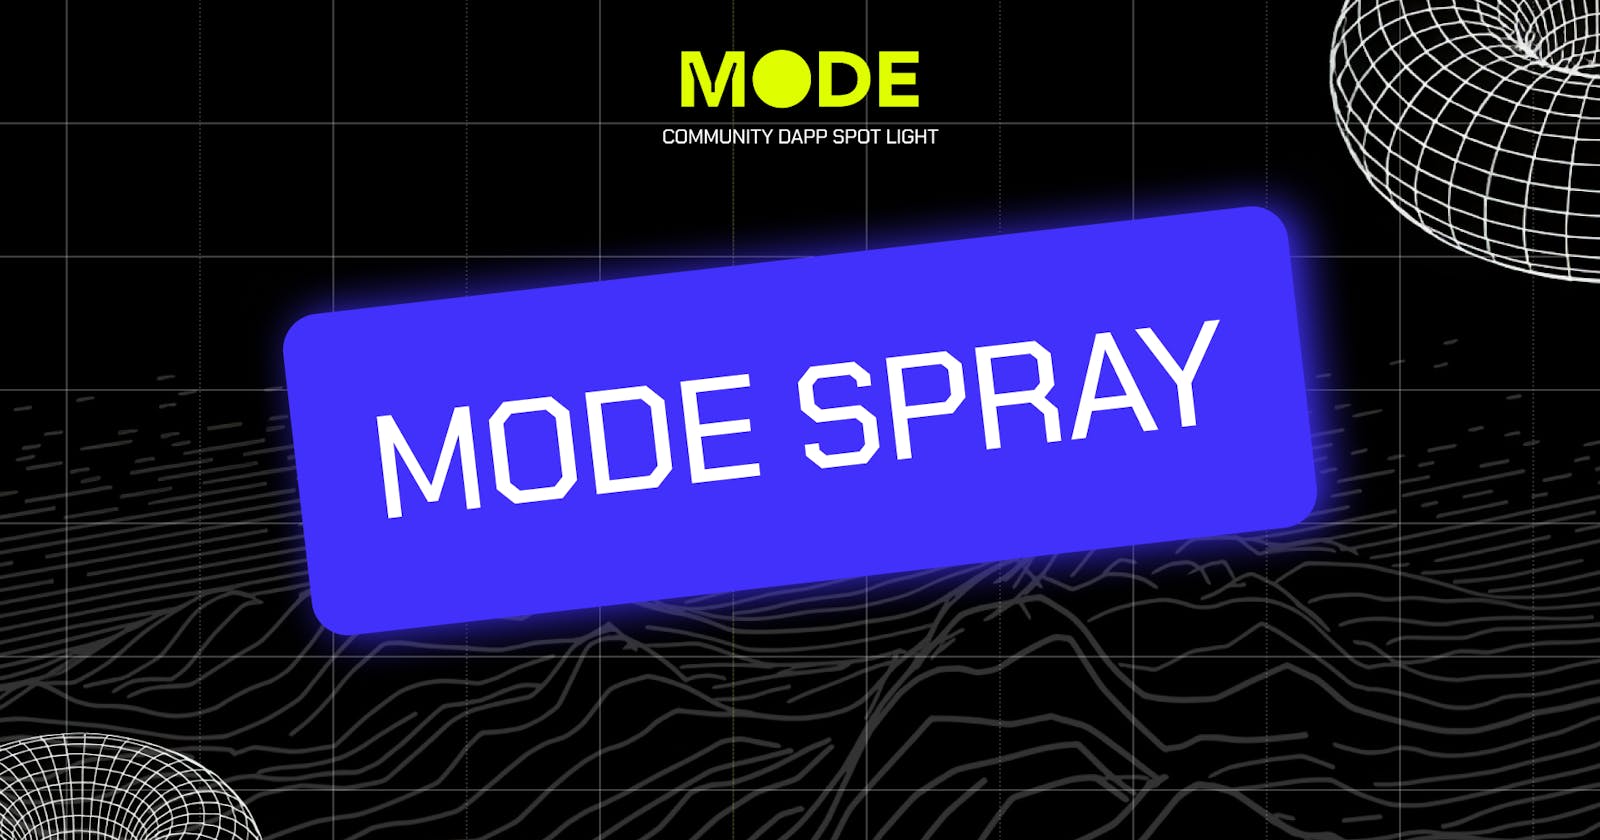 Mode Dapp Highlight #1: Mode Spray